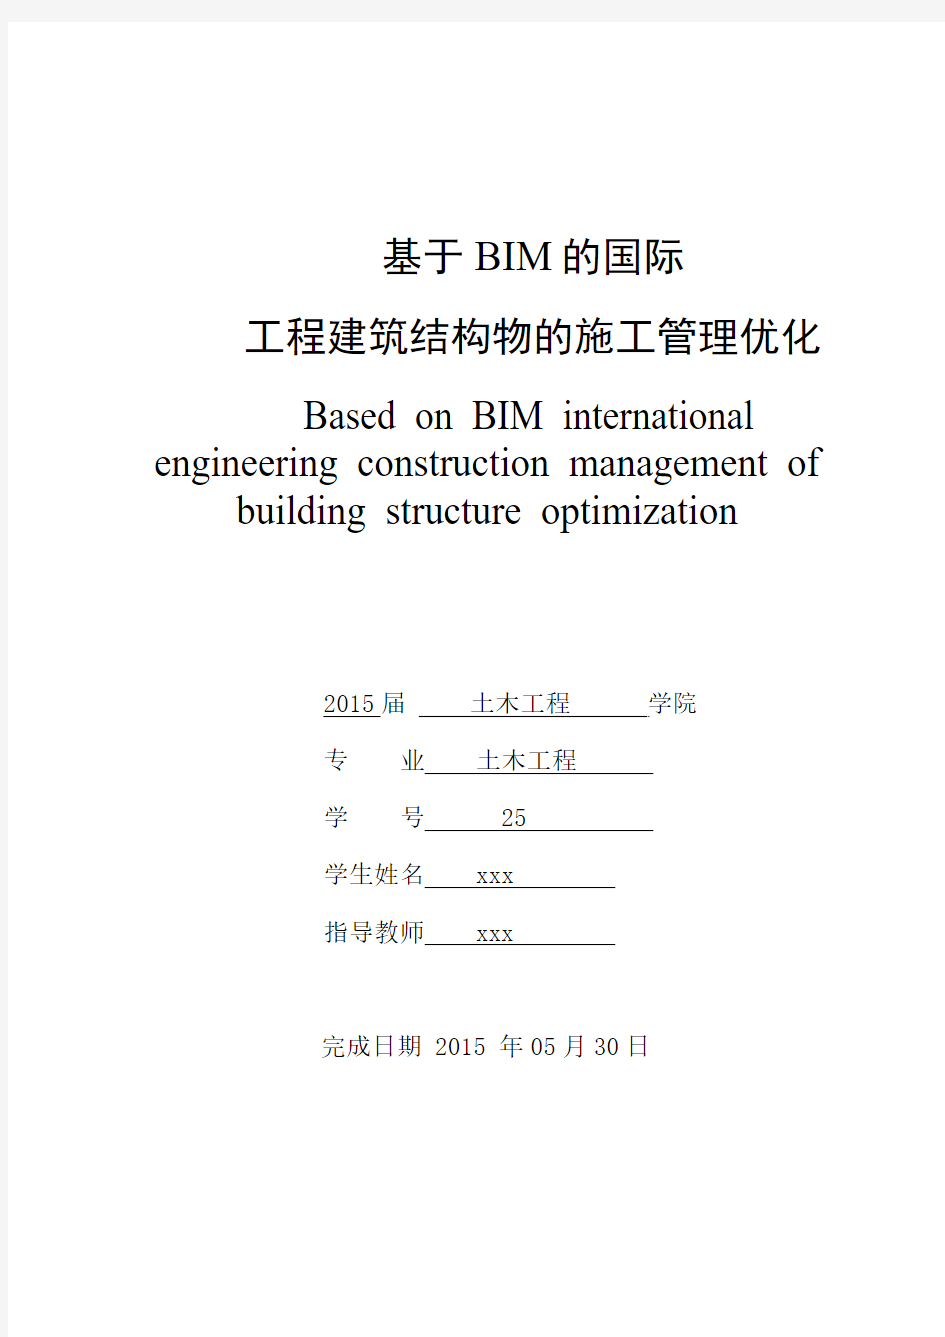 基于BIM的国际工程建筑结构物的施工管理优化毕业论文